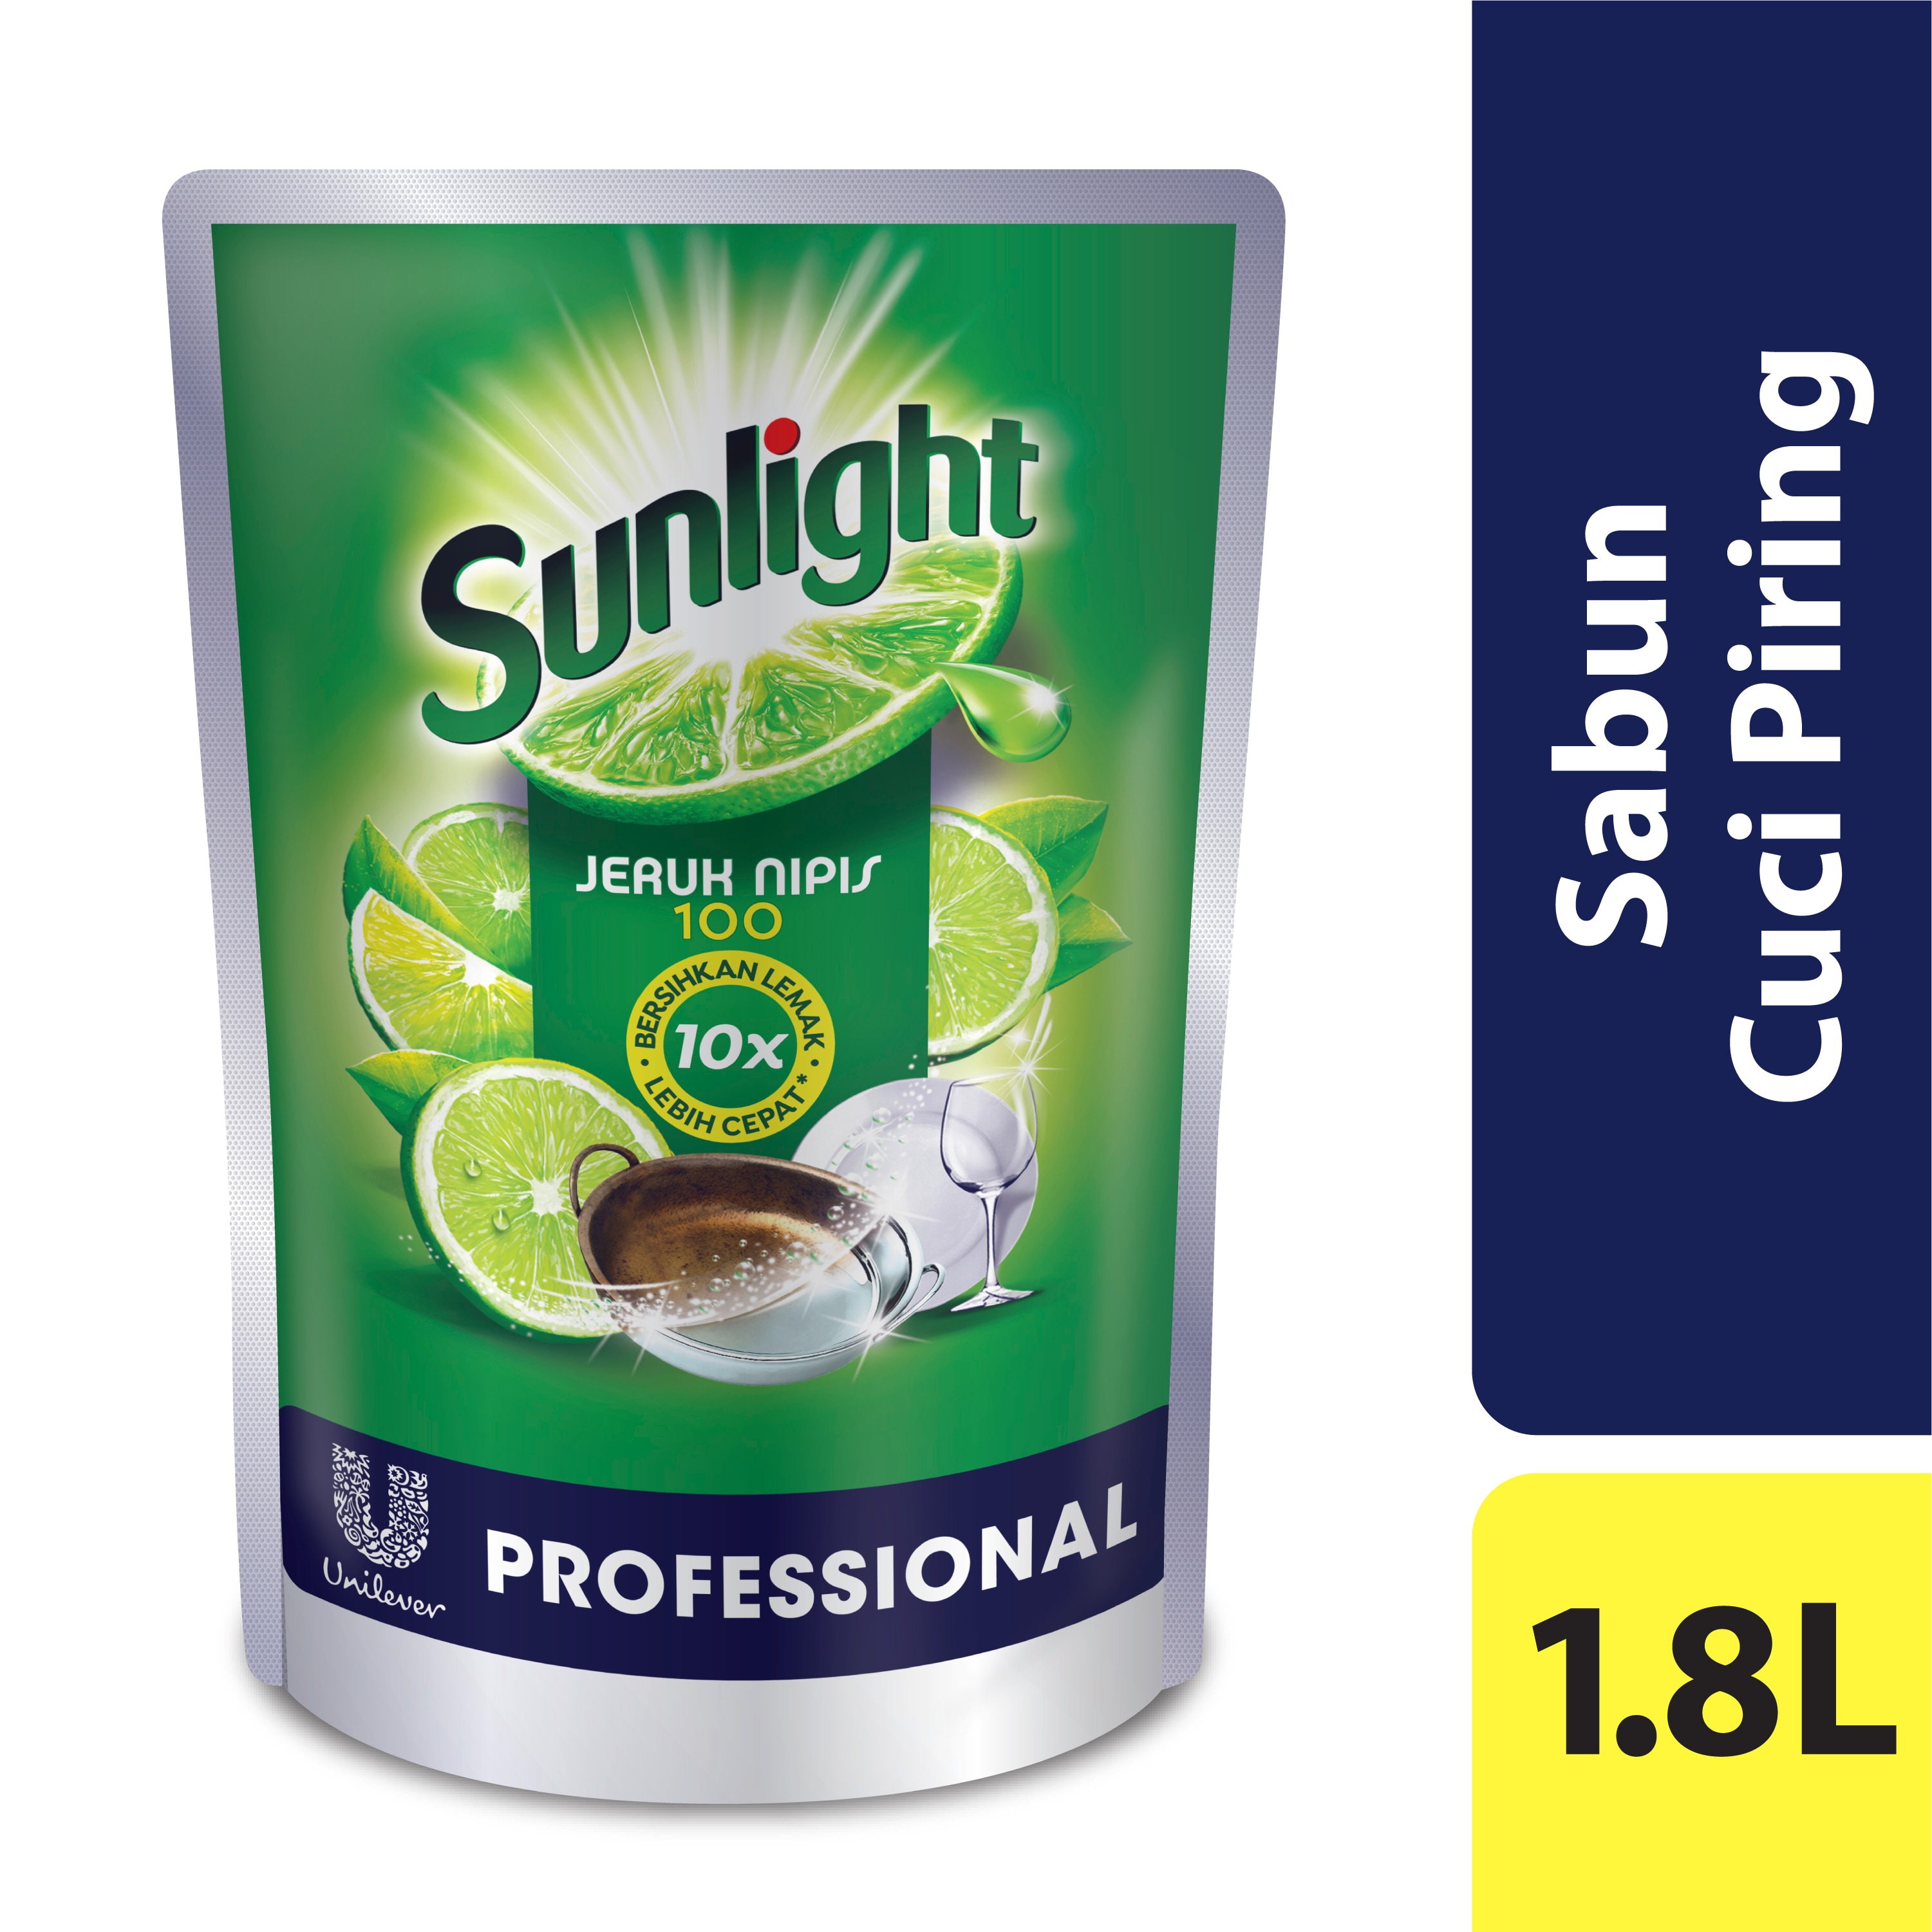 Sunlight Pro Lime Pouch 1.8L - Sunlight 10X Paling Ampuh Menghilangkan Minyak, Cepat Bilas, Lembut di Tangan